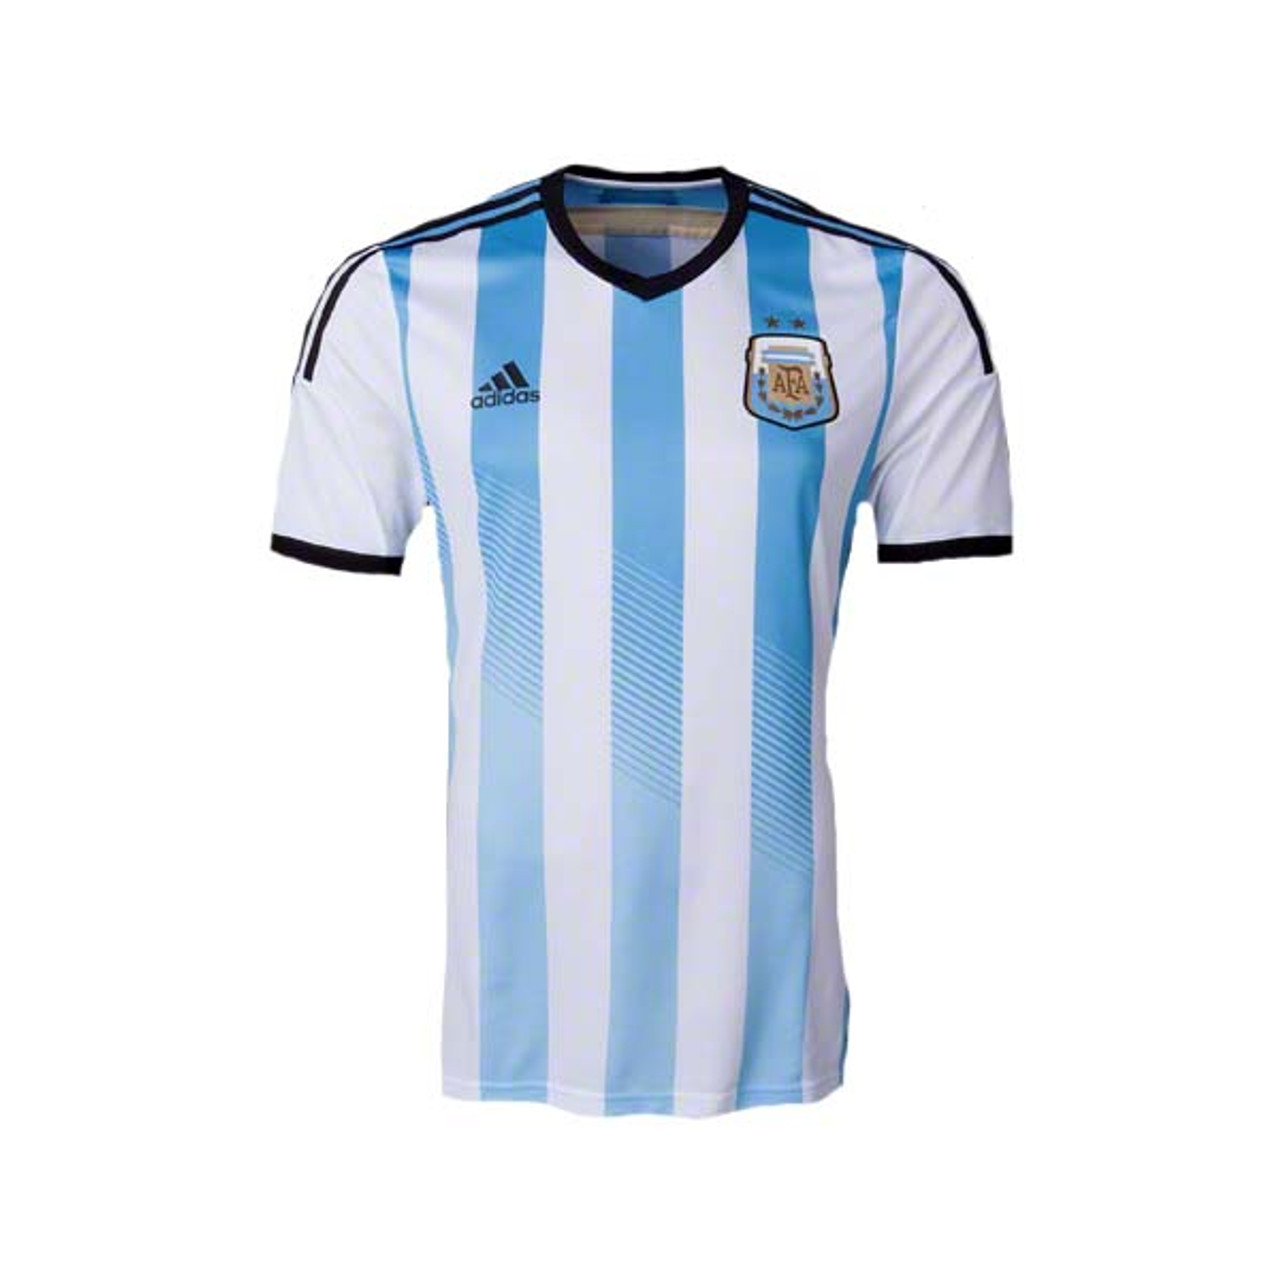 adidas argentina shirt